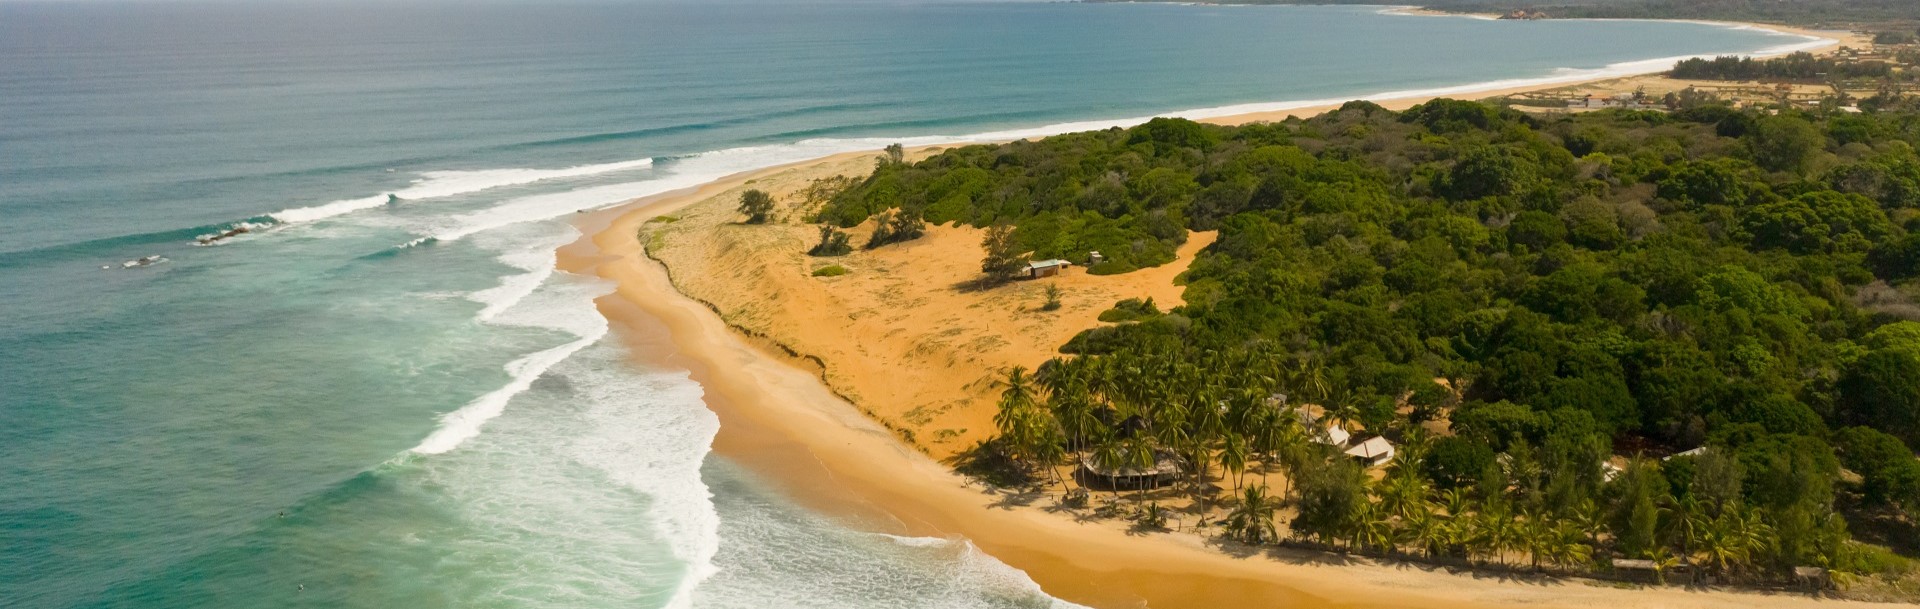 Sri Lanka - East Coast